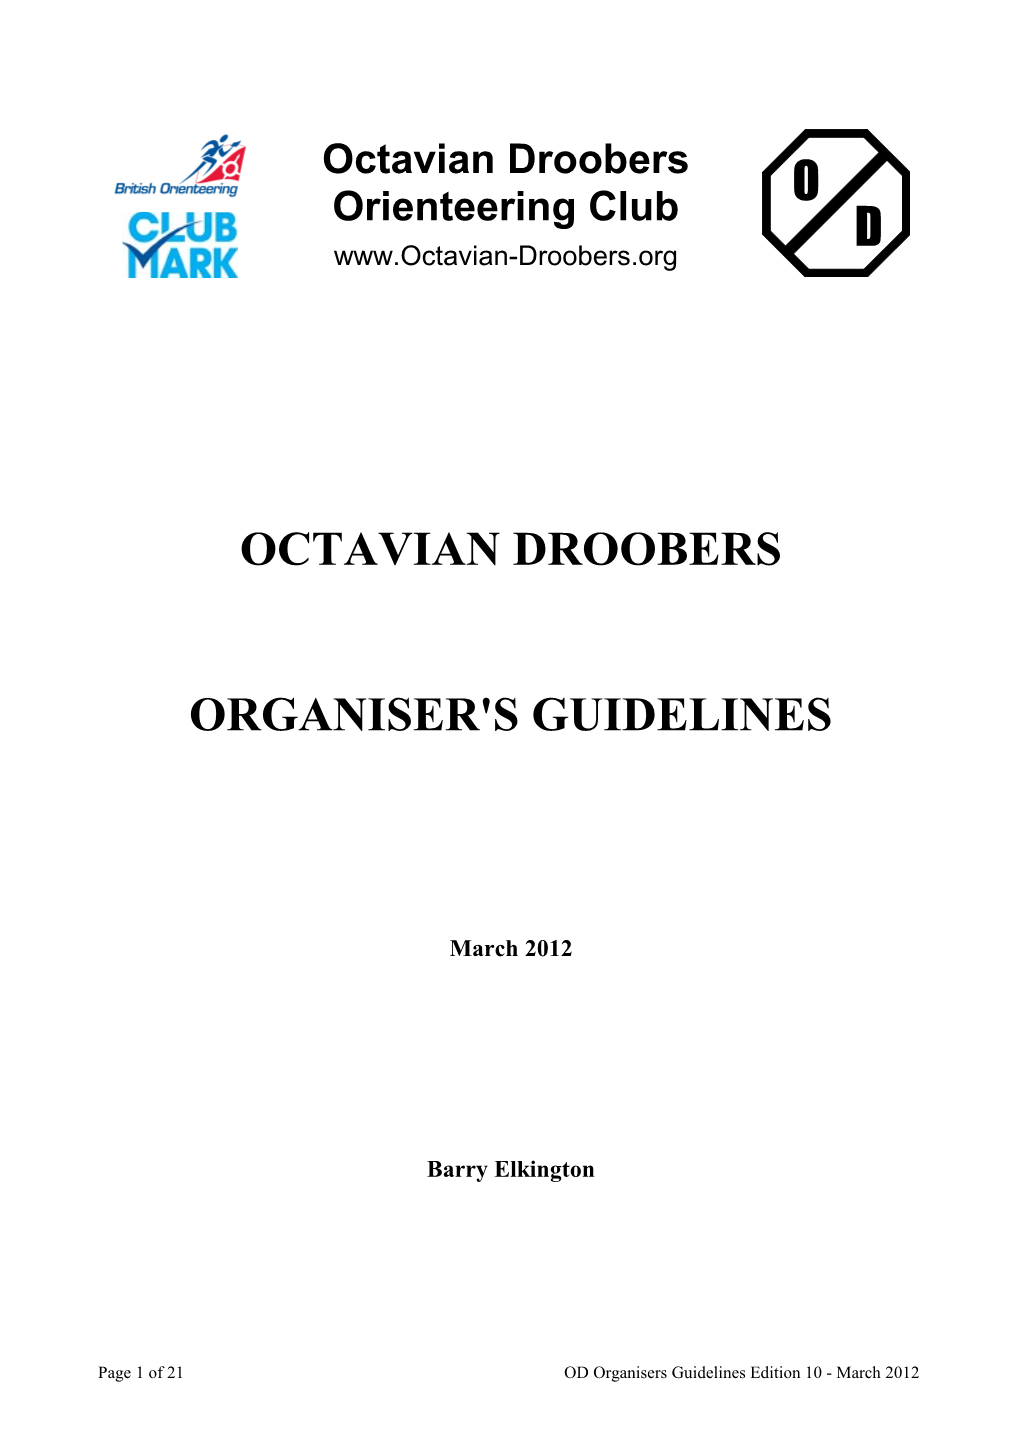 Organiser's Guidelines